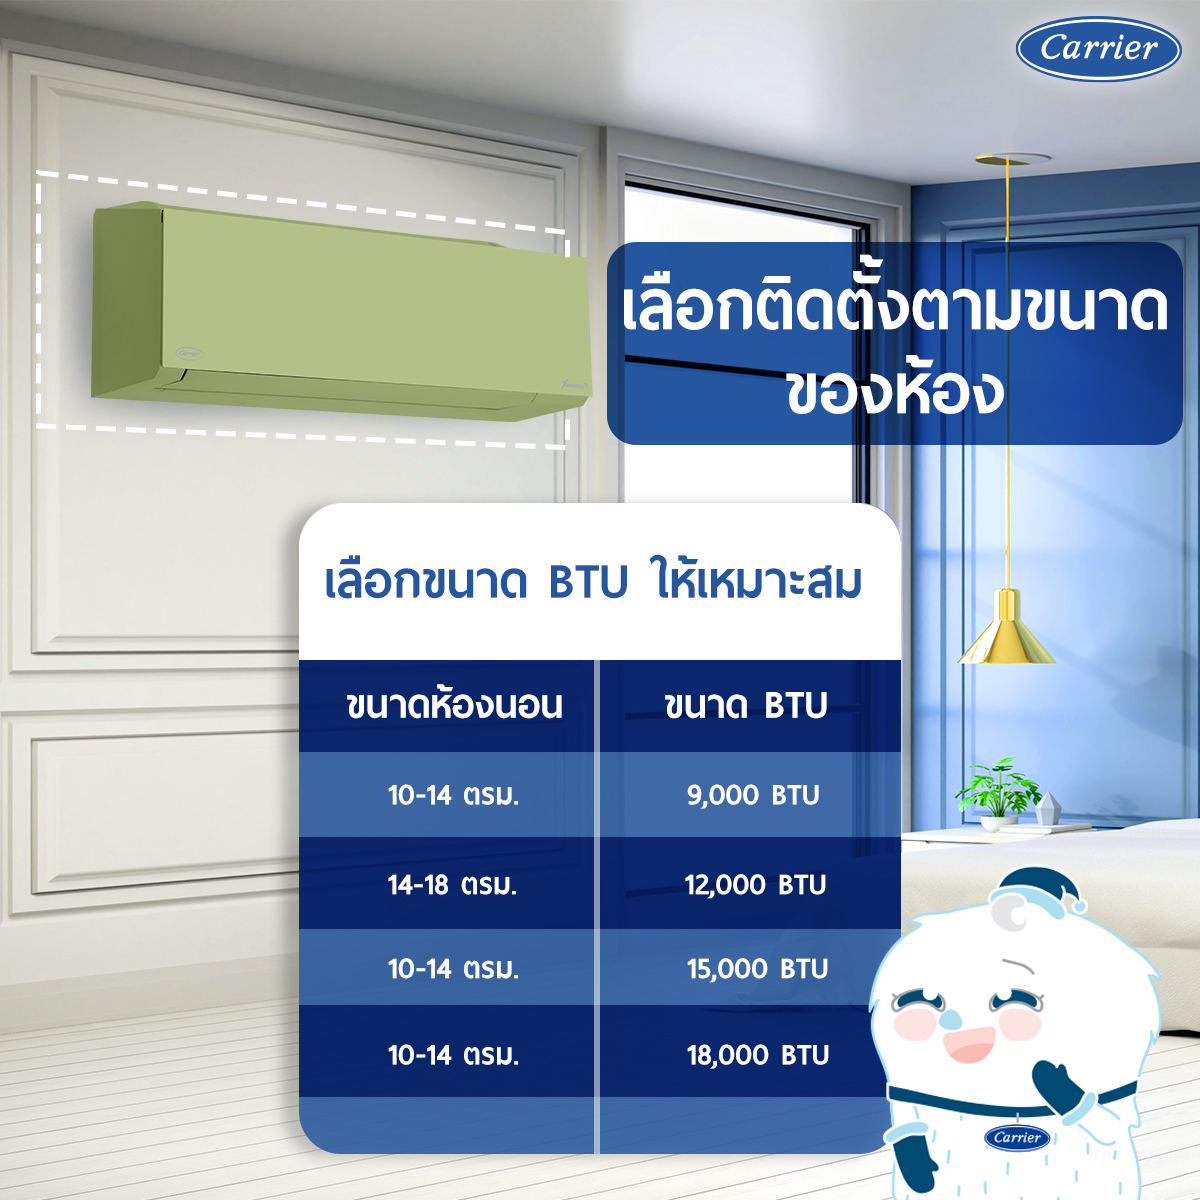 เลือกตำแหน่งติดตั้งแอร์ในห้องนอนอย่างไรให้เหมาะสม? - Carrier Thailand